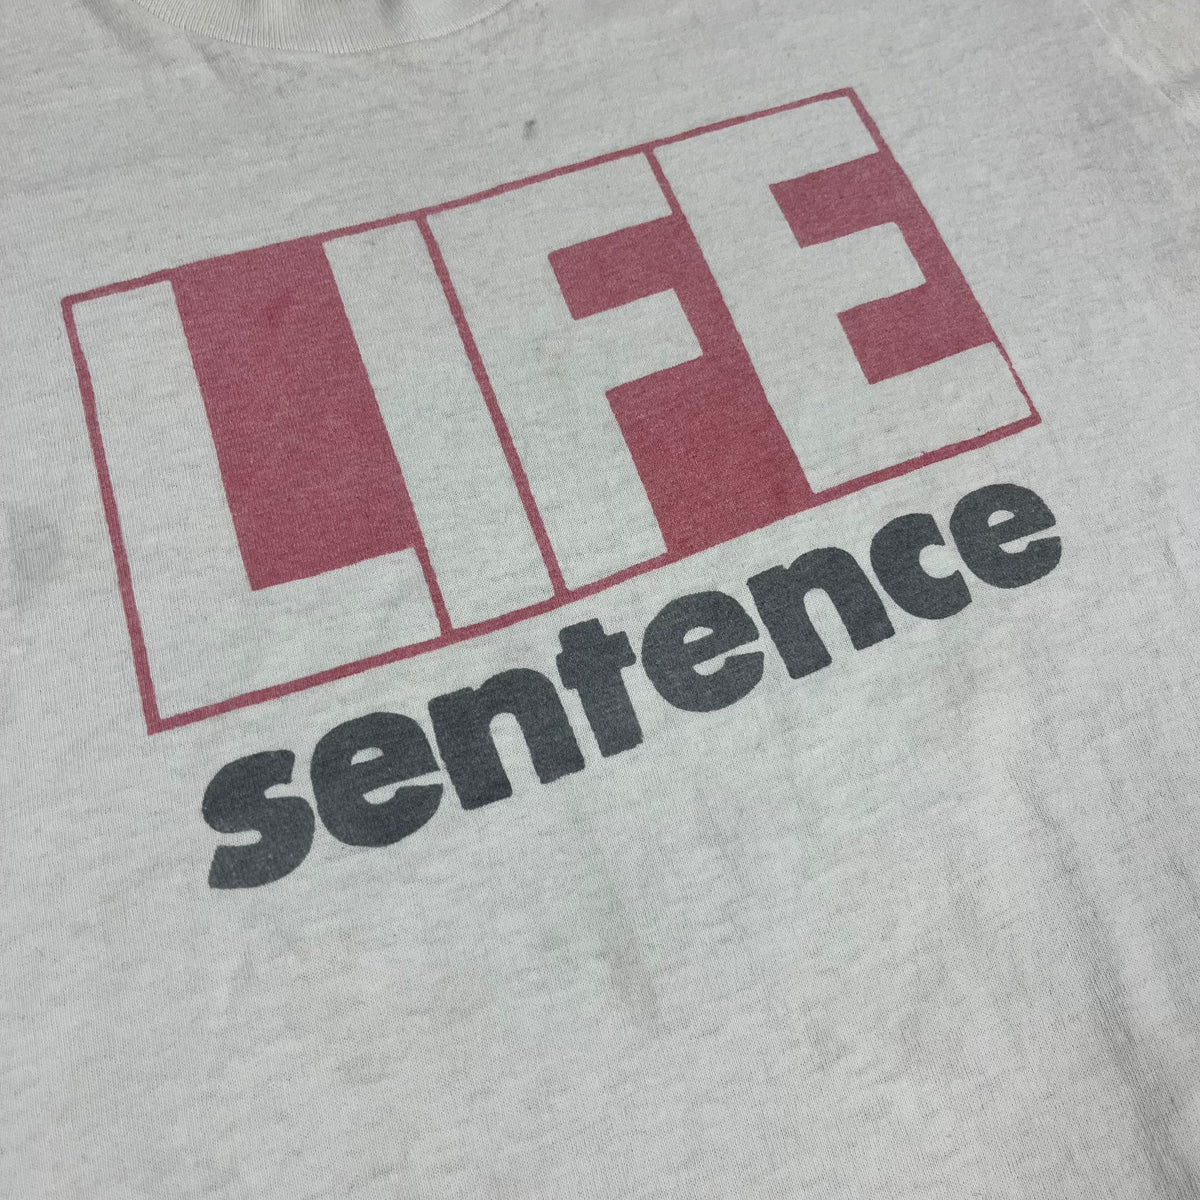 Vintage Life Sentence &quot;Walkthrufyre&quot; T-Shirt